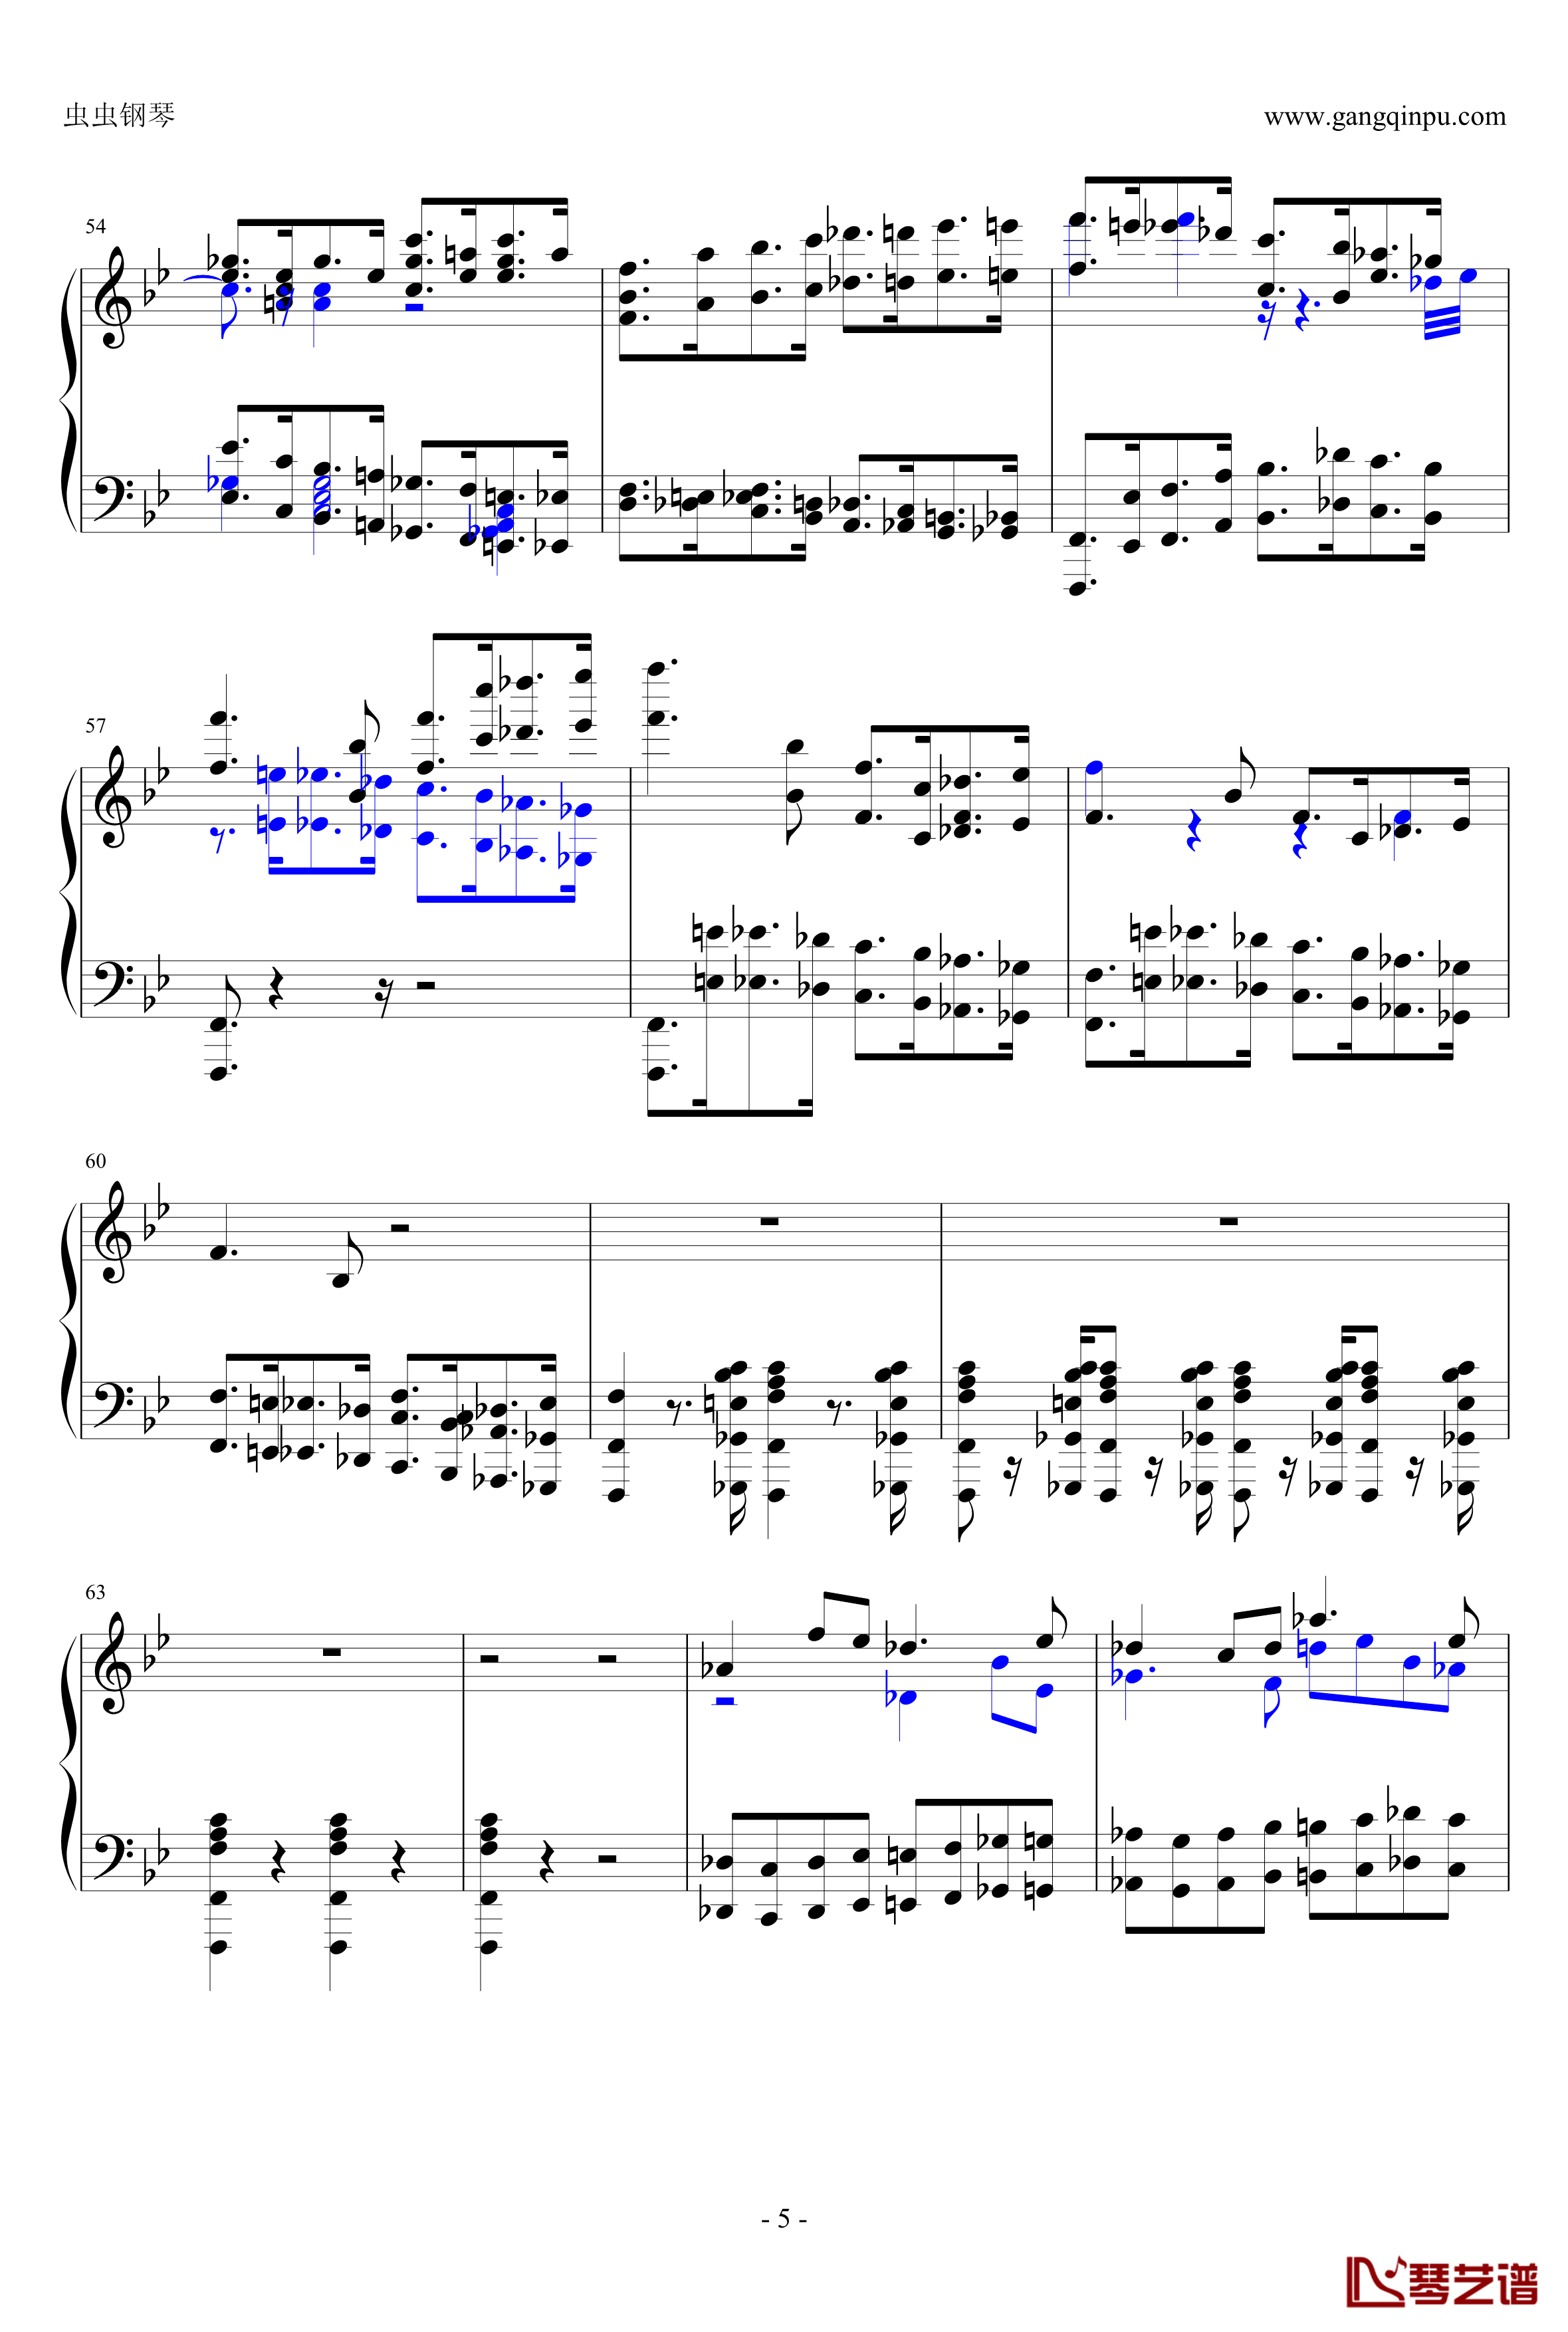 布鲁克纳第五交响曲第四乐章钢琴谱-钢琴独奏版5